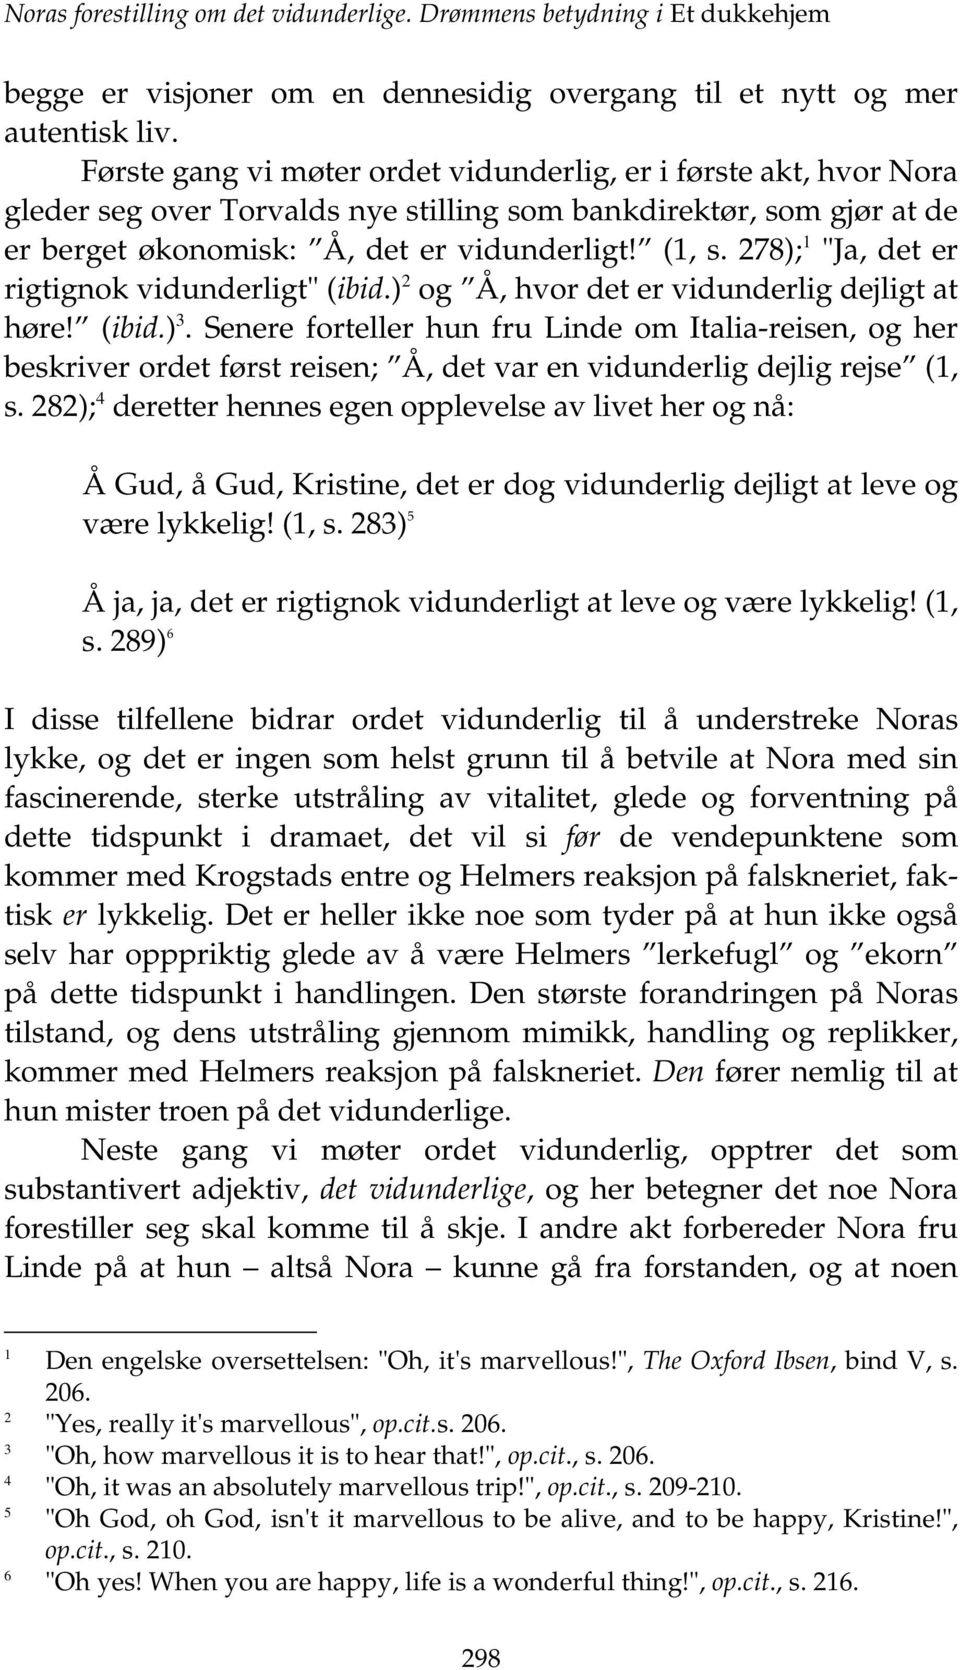 NORAS FORESTILLING OM DET VIDUNDERLIGE. DRØMMENS BETYDNING I ET DUKKEHJEM  (1879) Lisbeth P. Wærp - PDF Free Download